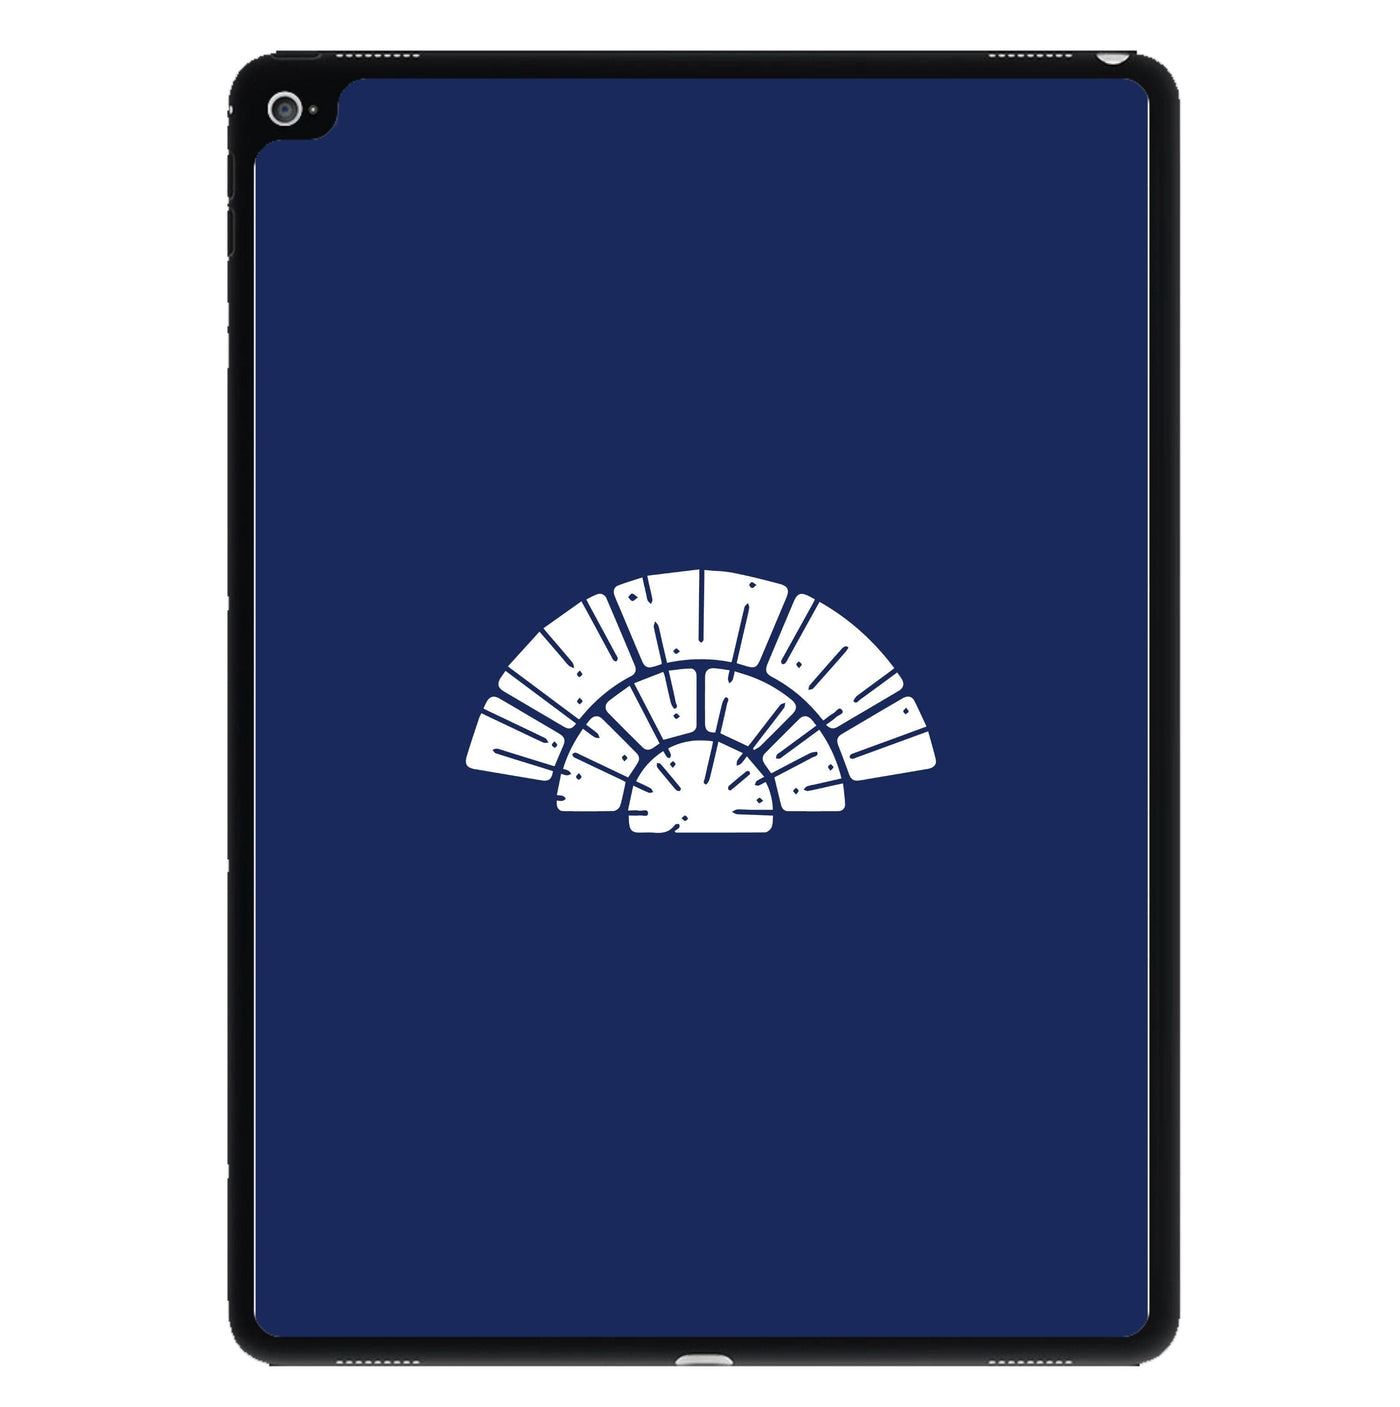 Blue Design - Star Wars iPad Case